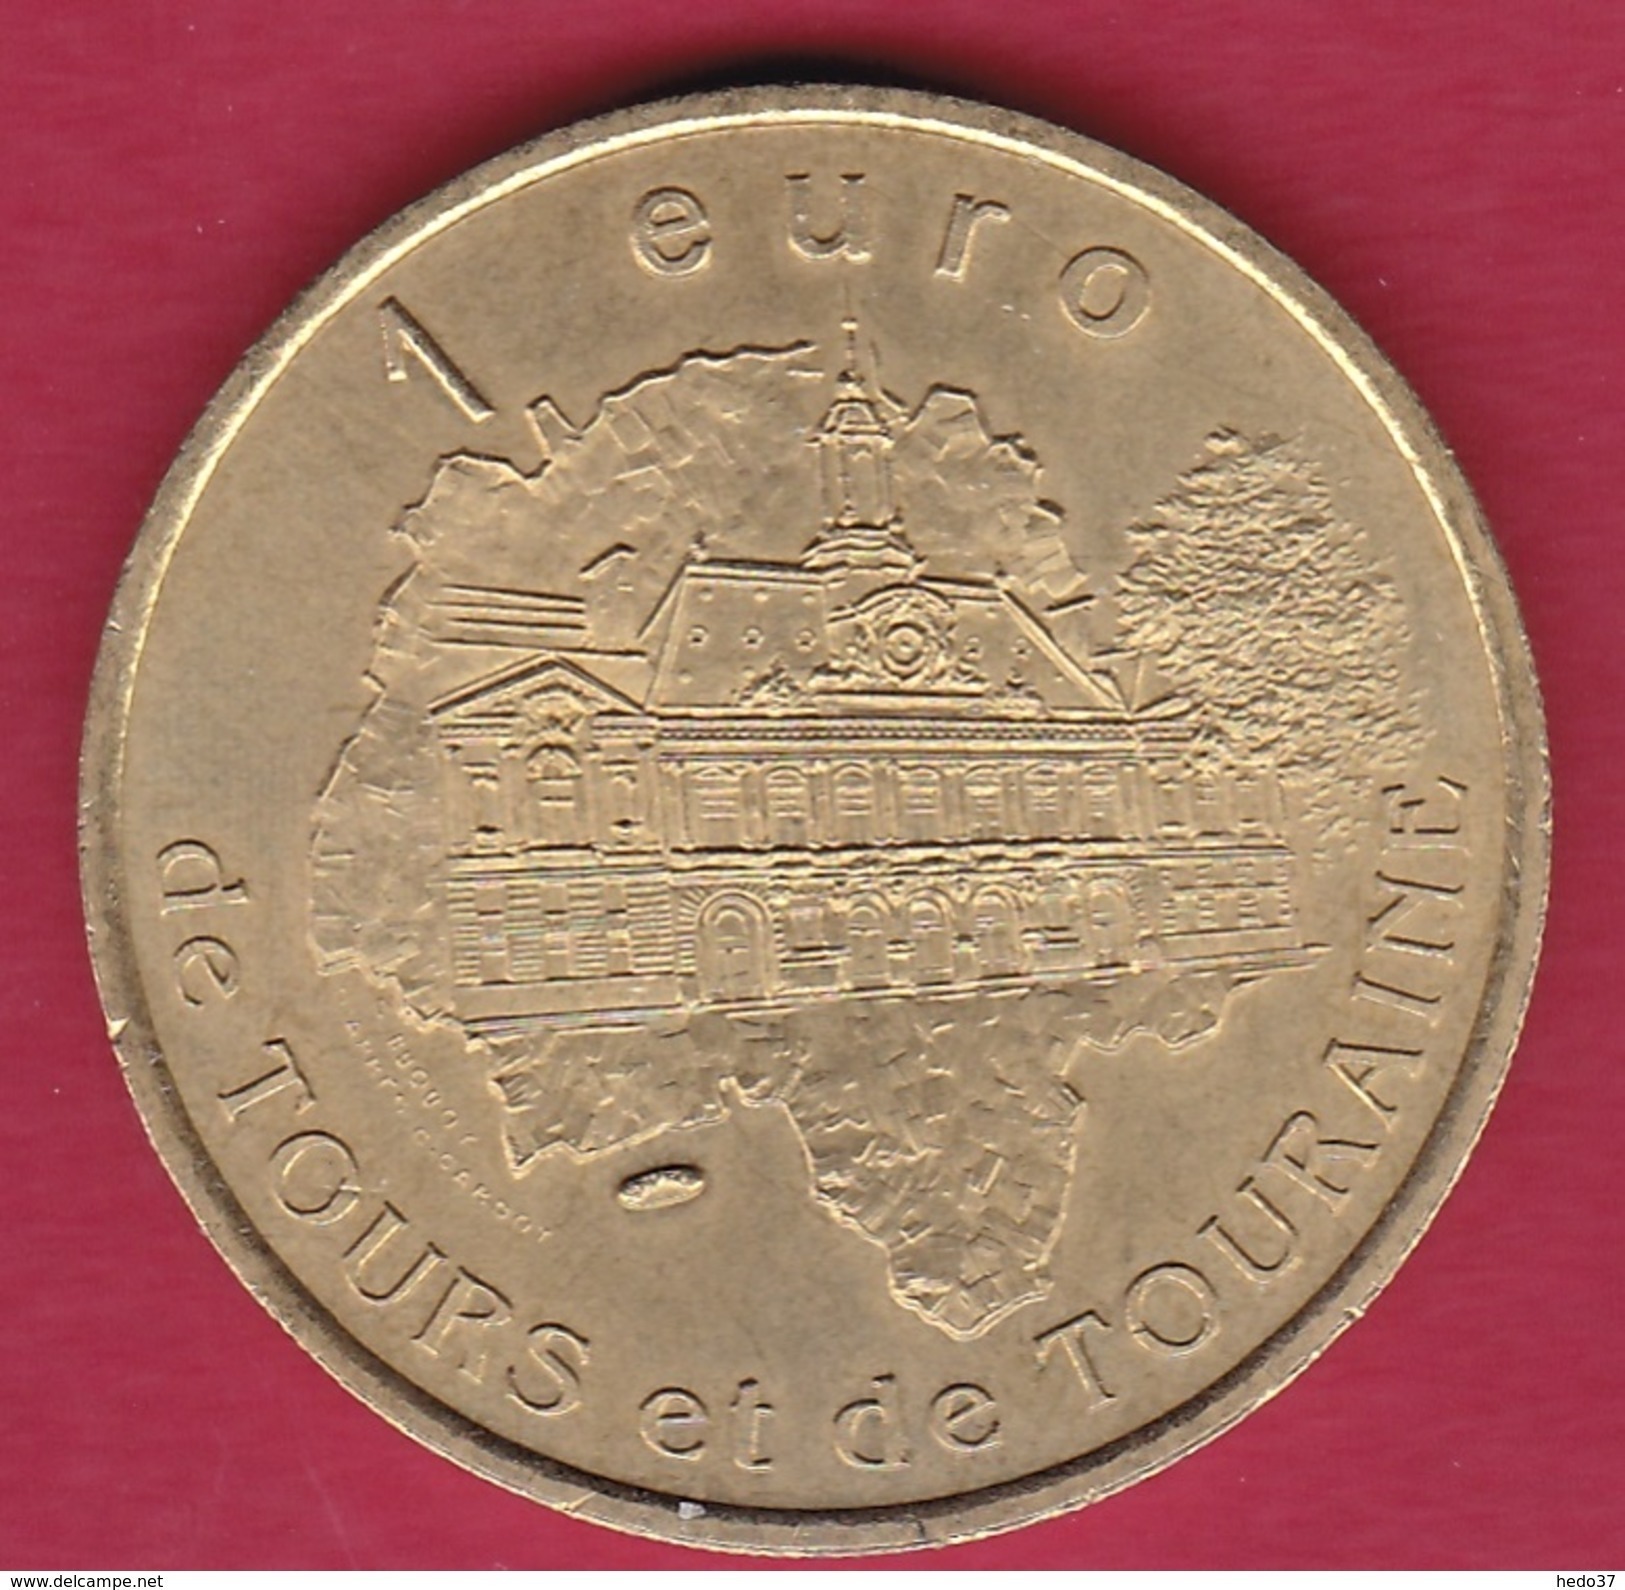 France - Bléré - 1 Euro - 1997 - Euro Delle Città